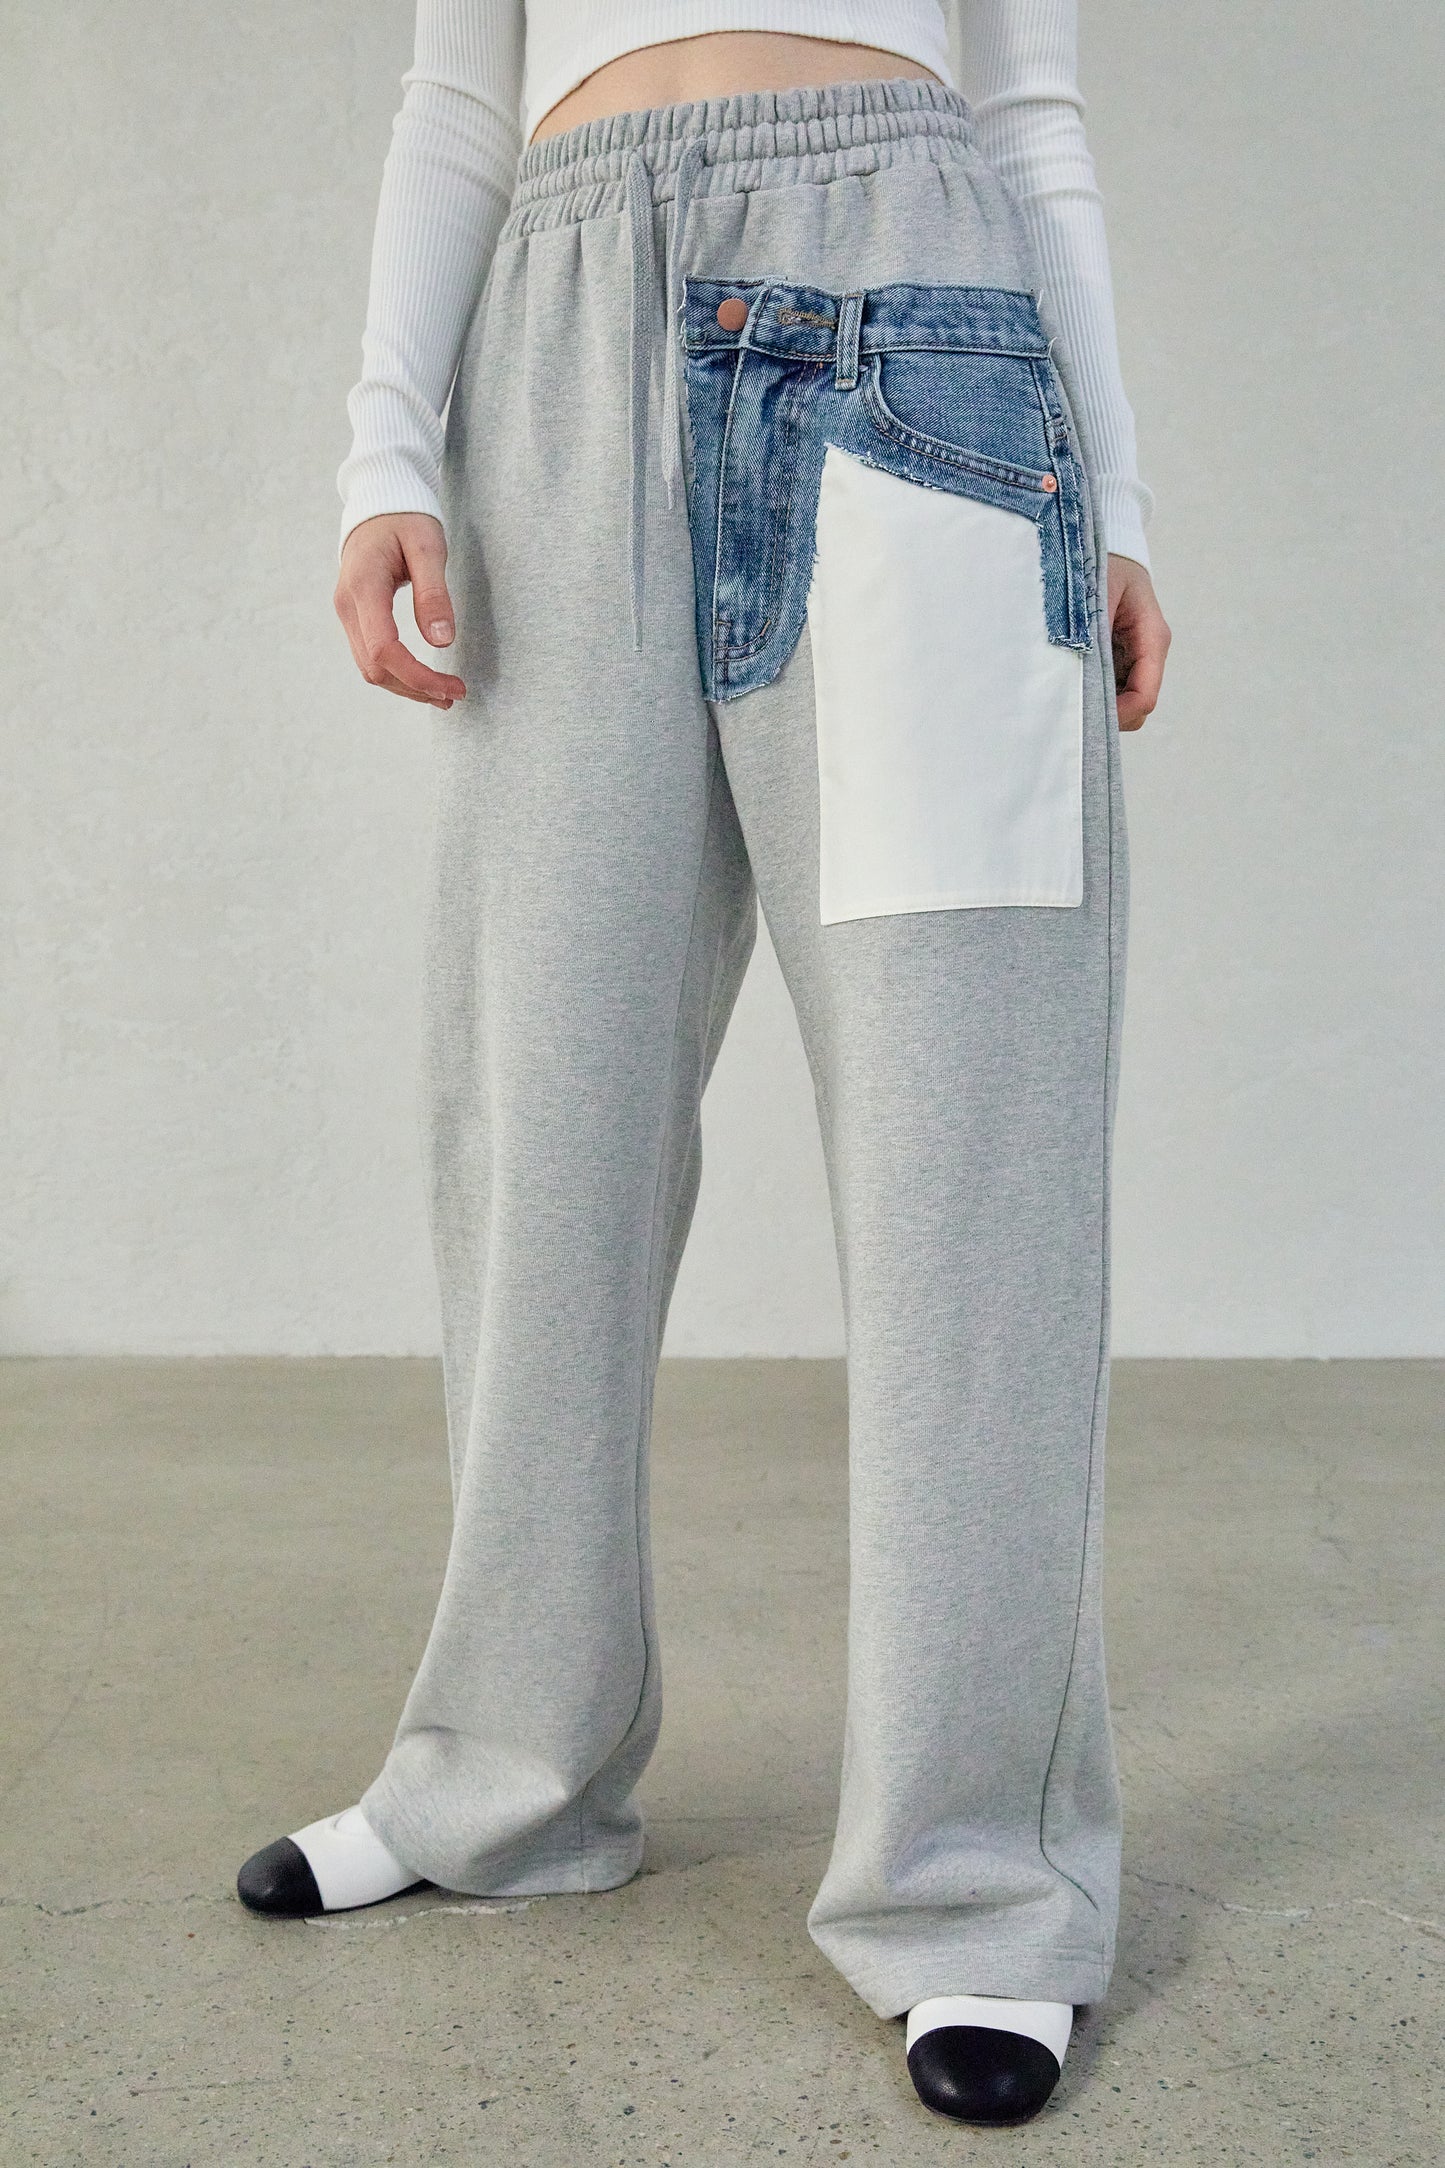 Jean SourceUnknown Leg Pocket – Wide Sweatpants, Grey